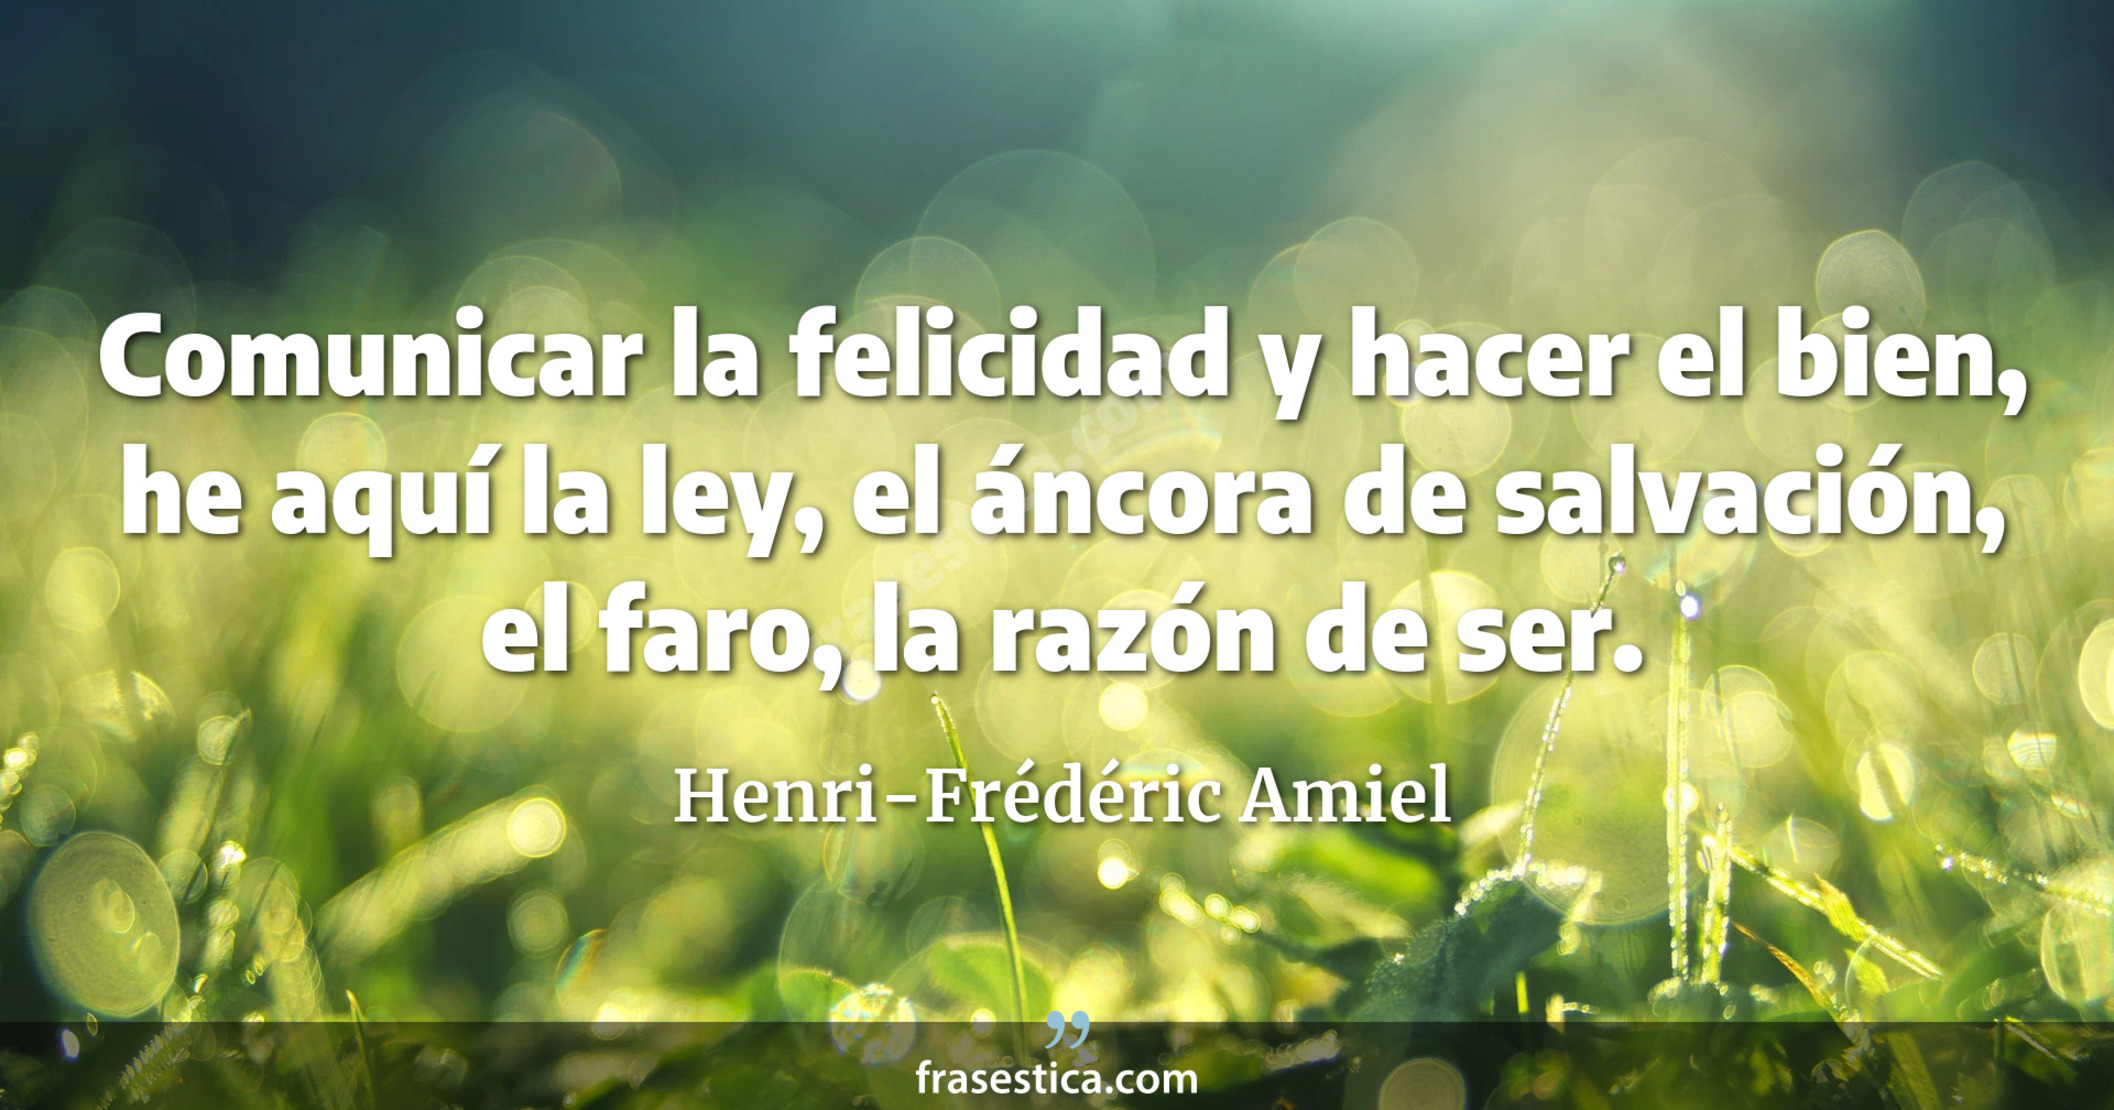 Comunicar la felicidad y hacer el bien, he aquí la ley, el áncora de salvación, el faro, la razón de ser. - Henri-Frédéric Amiel